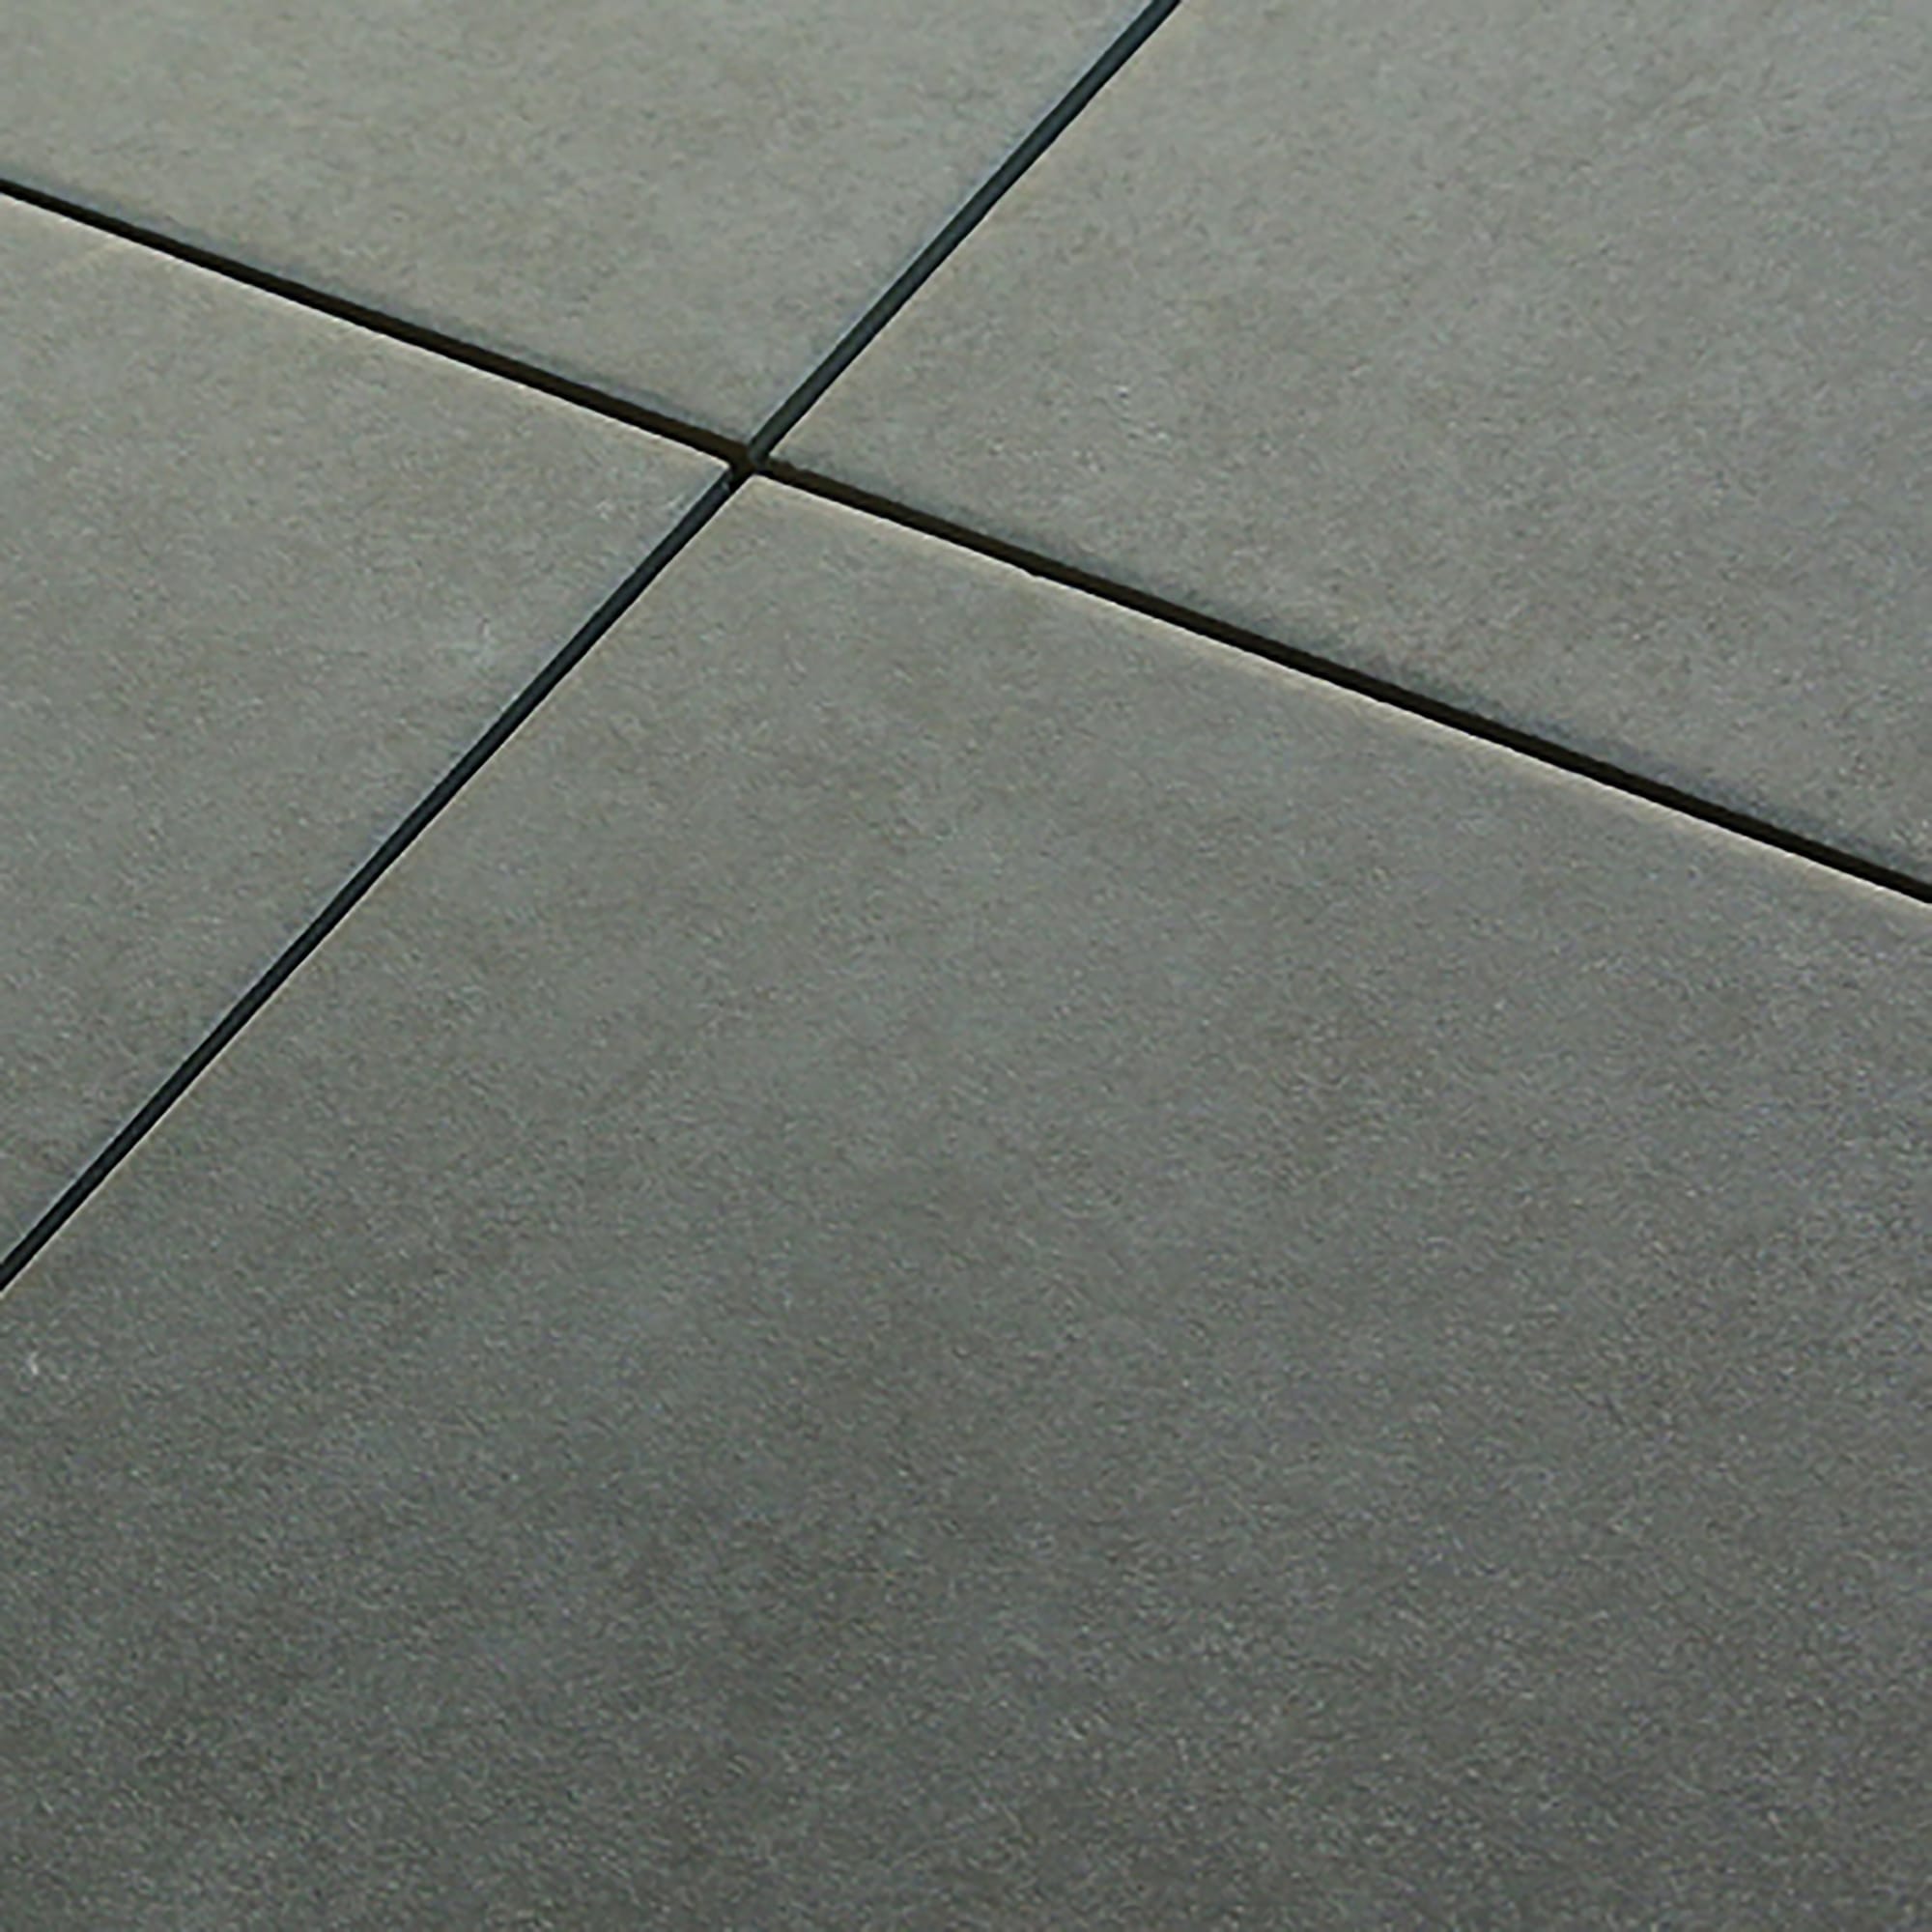 タイル 床 100角 グレー 灰色 モジュール Module Floor Tile 100-No.9 18シート入り 美濃焼 磁器 杉浦製陶 - 2